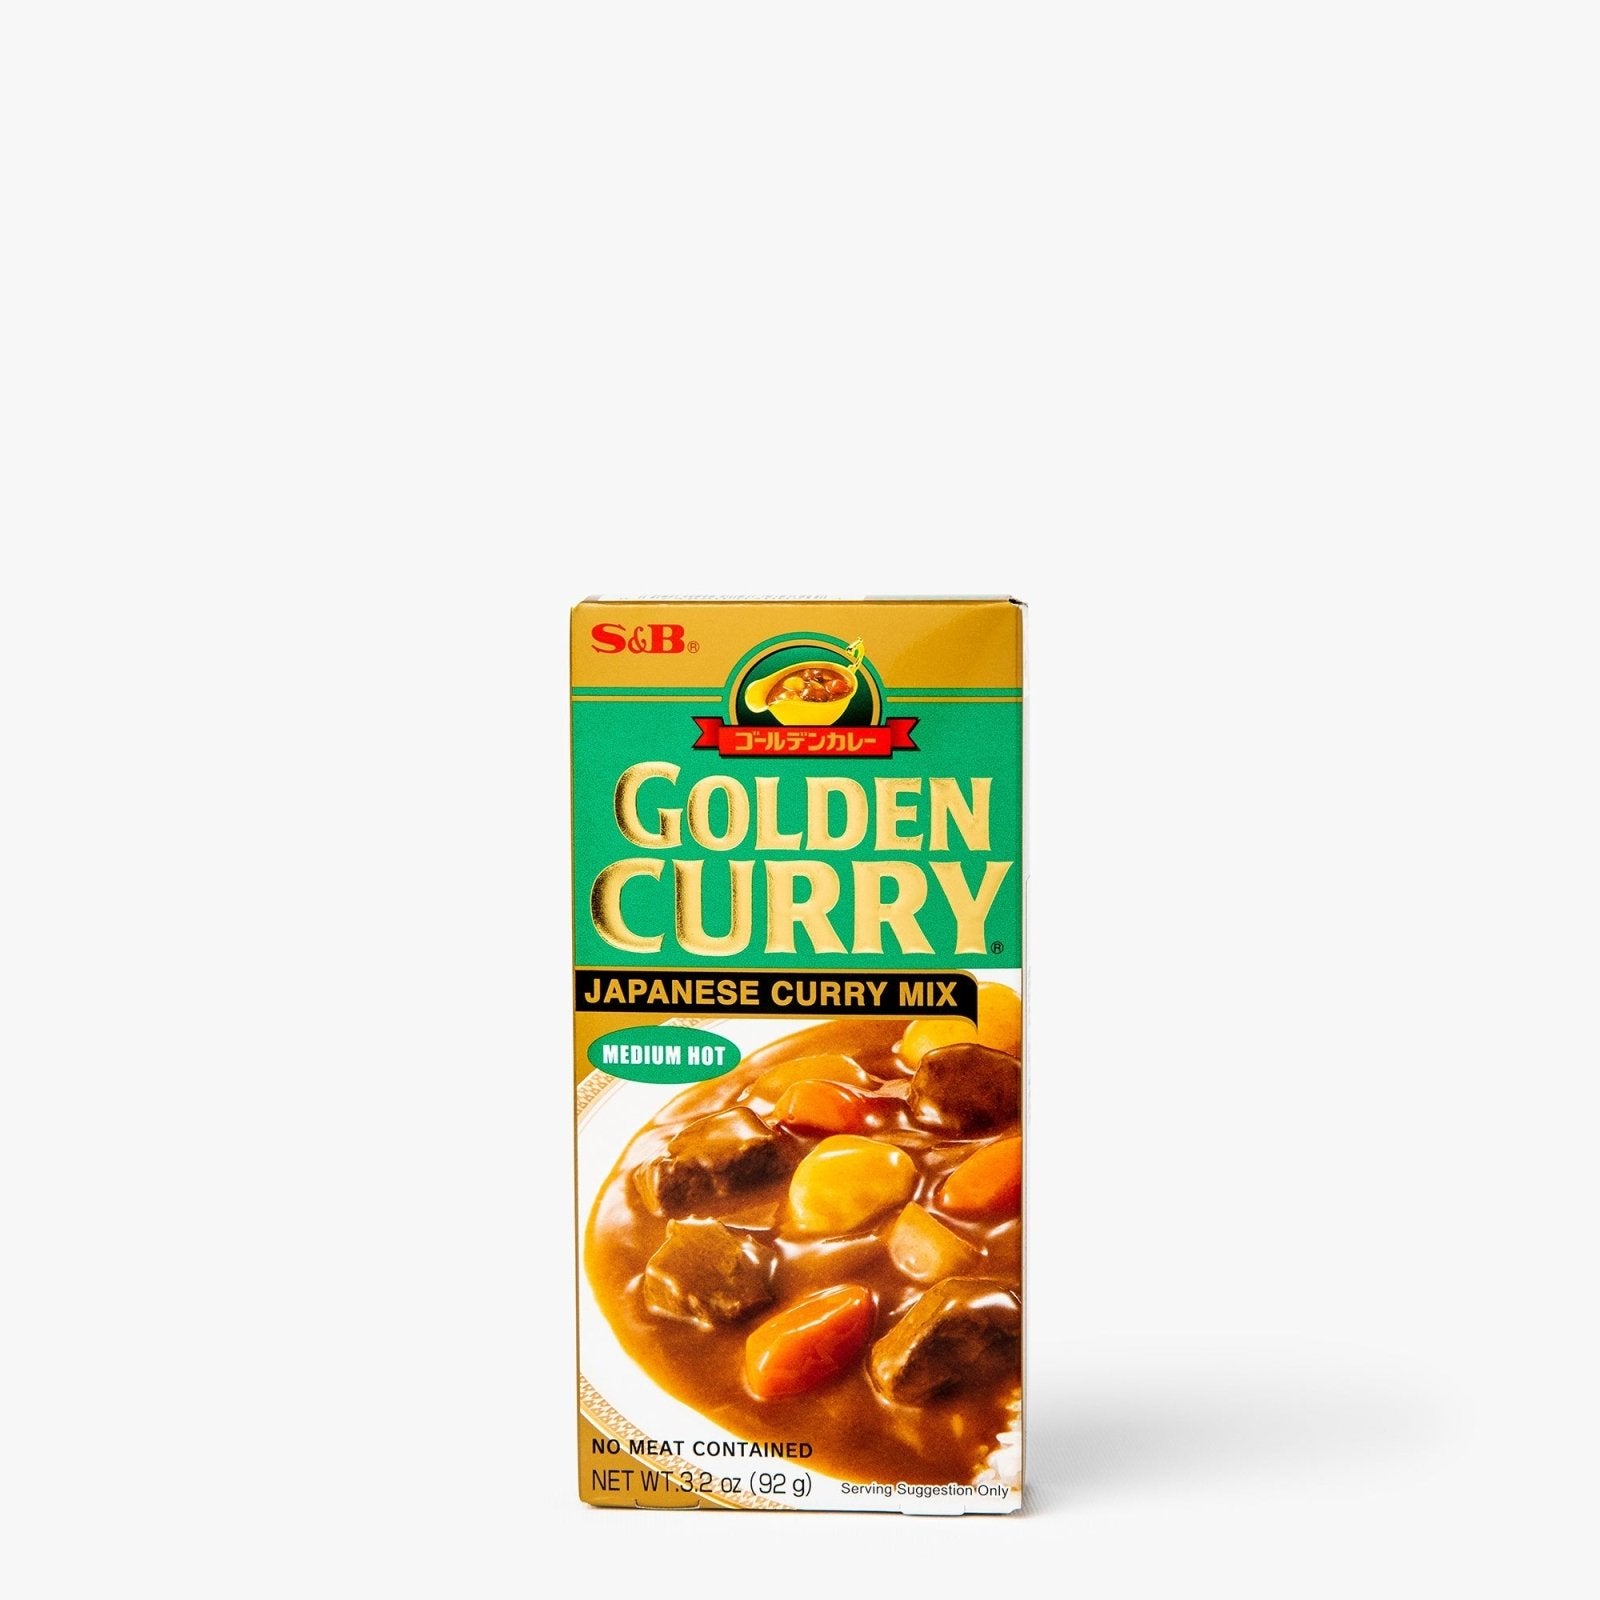 Sauce pour curry relevé en tablette - 92g - Golden curry - iRASSHAi